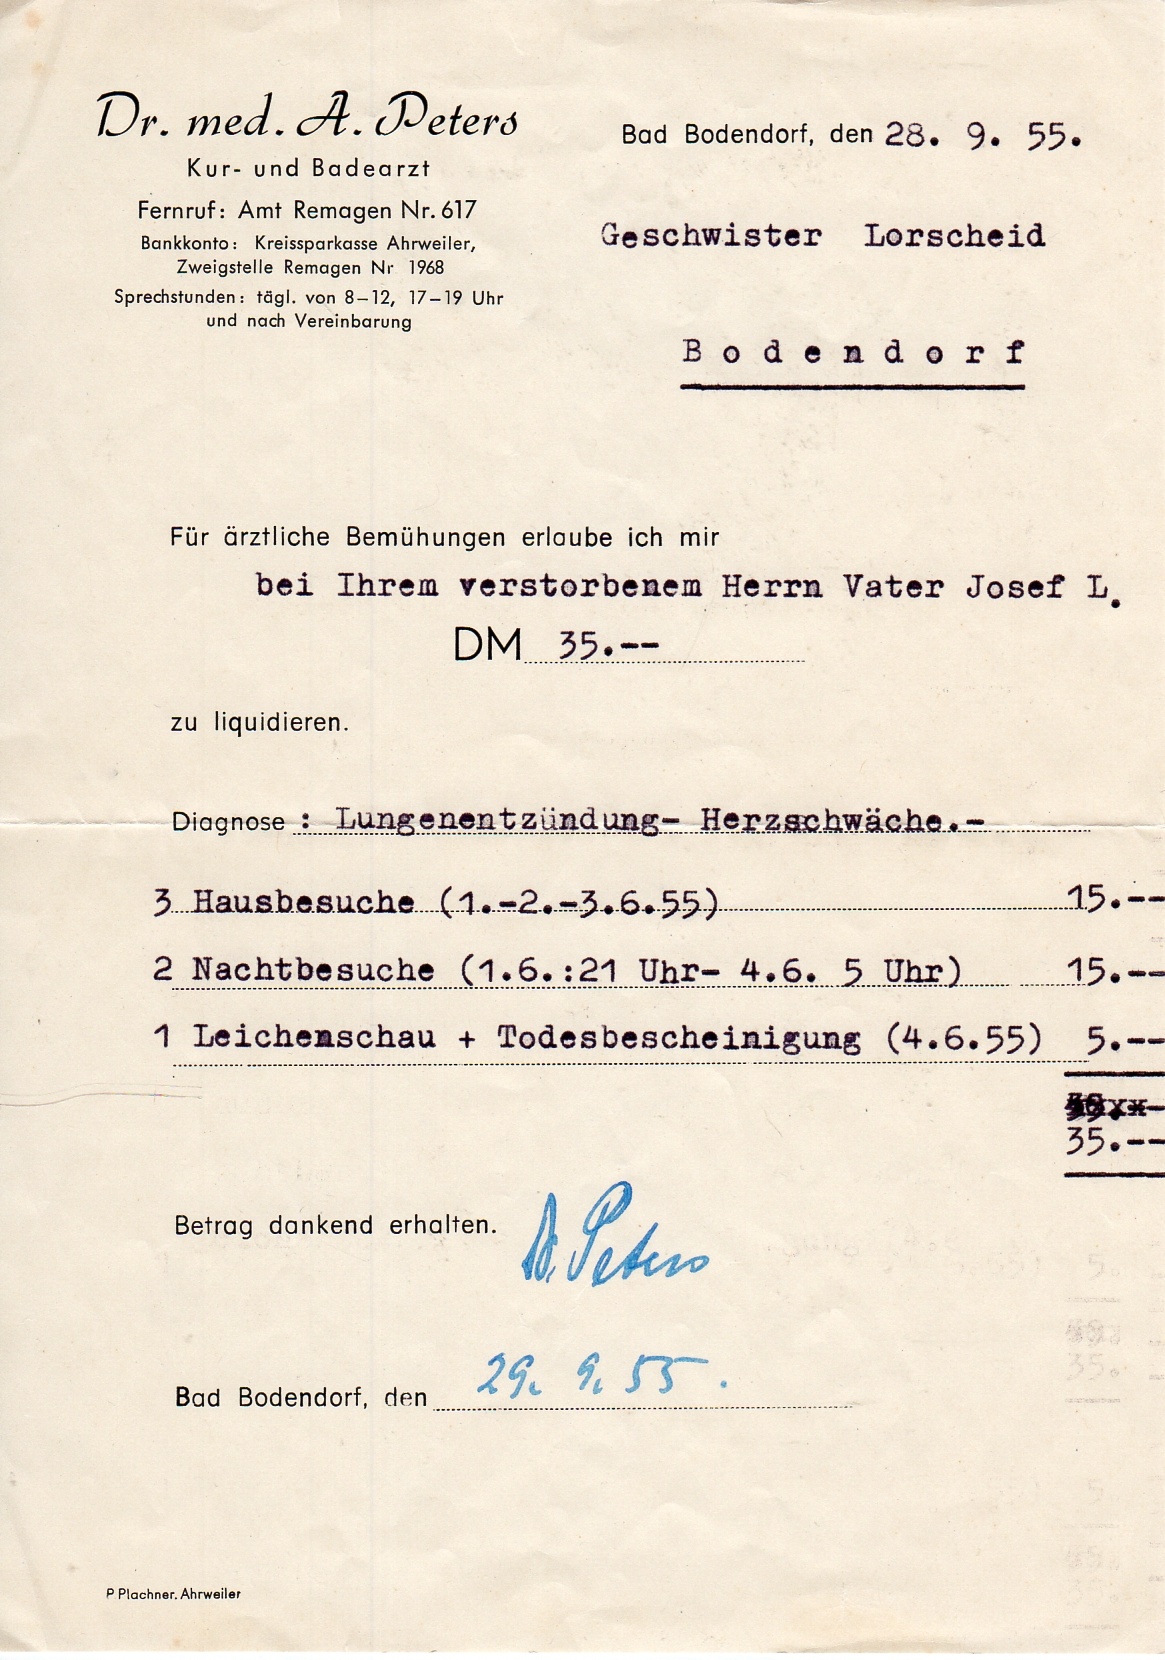 Rechnung für ärztliche Maßnahmen mit Briefumschlag vom 28.9.1955 (Heimatmuseum und -Archiv Bad Bodendorf CC BY-NC-SA)